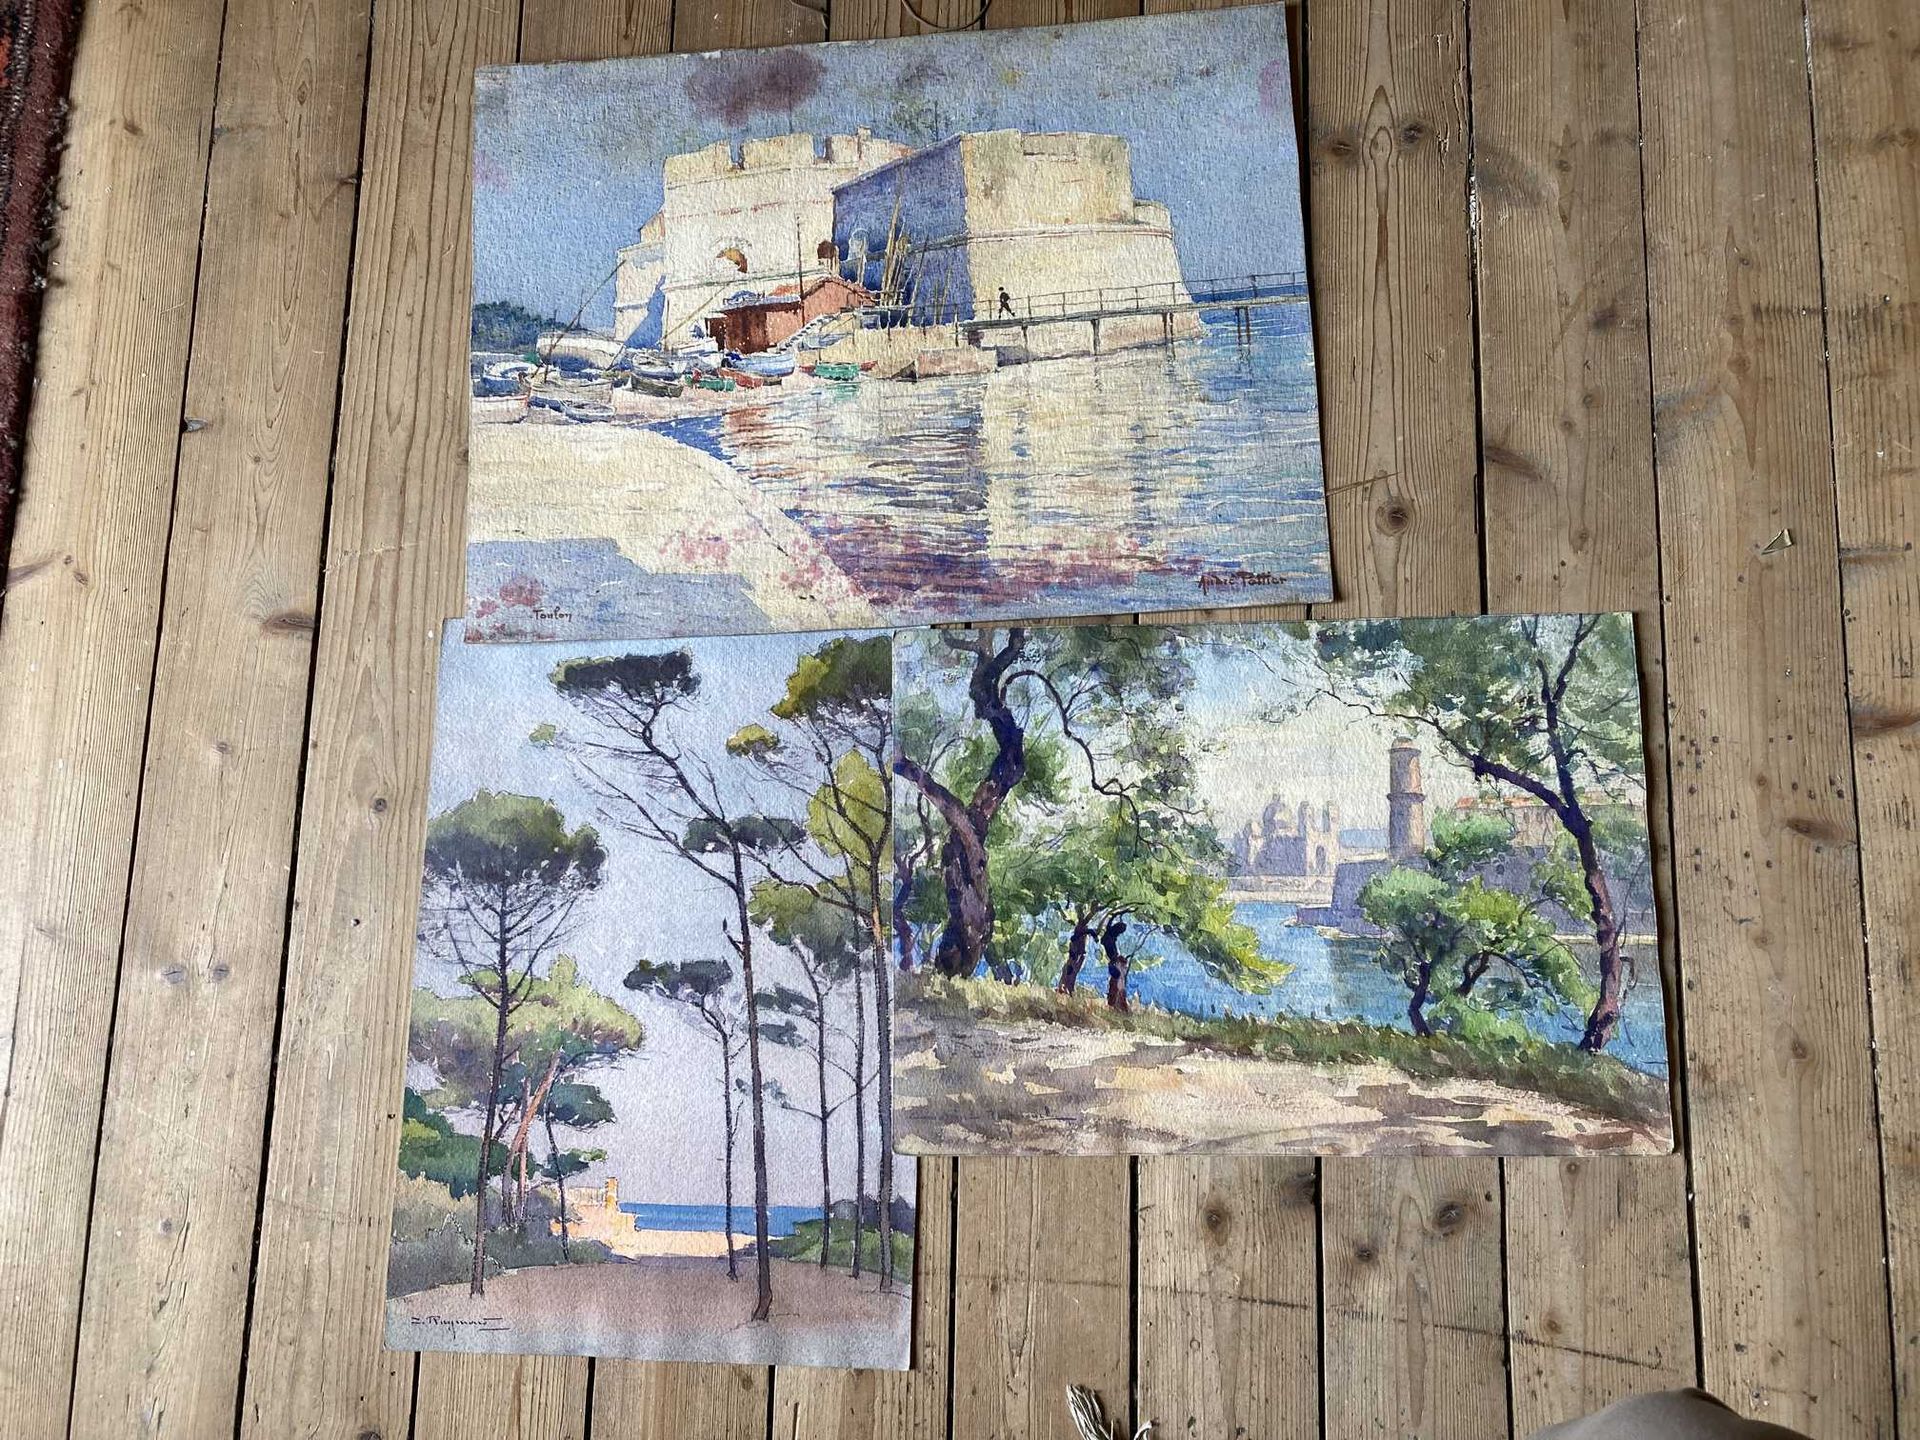 Null 土伦的景色 - Hyères的景色 - 马赛的景色。三幅纸上水彩画，未装裱。不同的签名，包括安德烈-波蒂尔。

尺寸：34 x 45厘米左右。